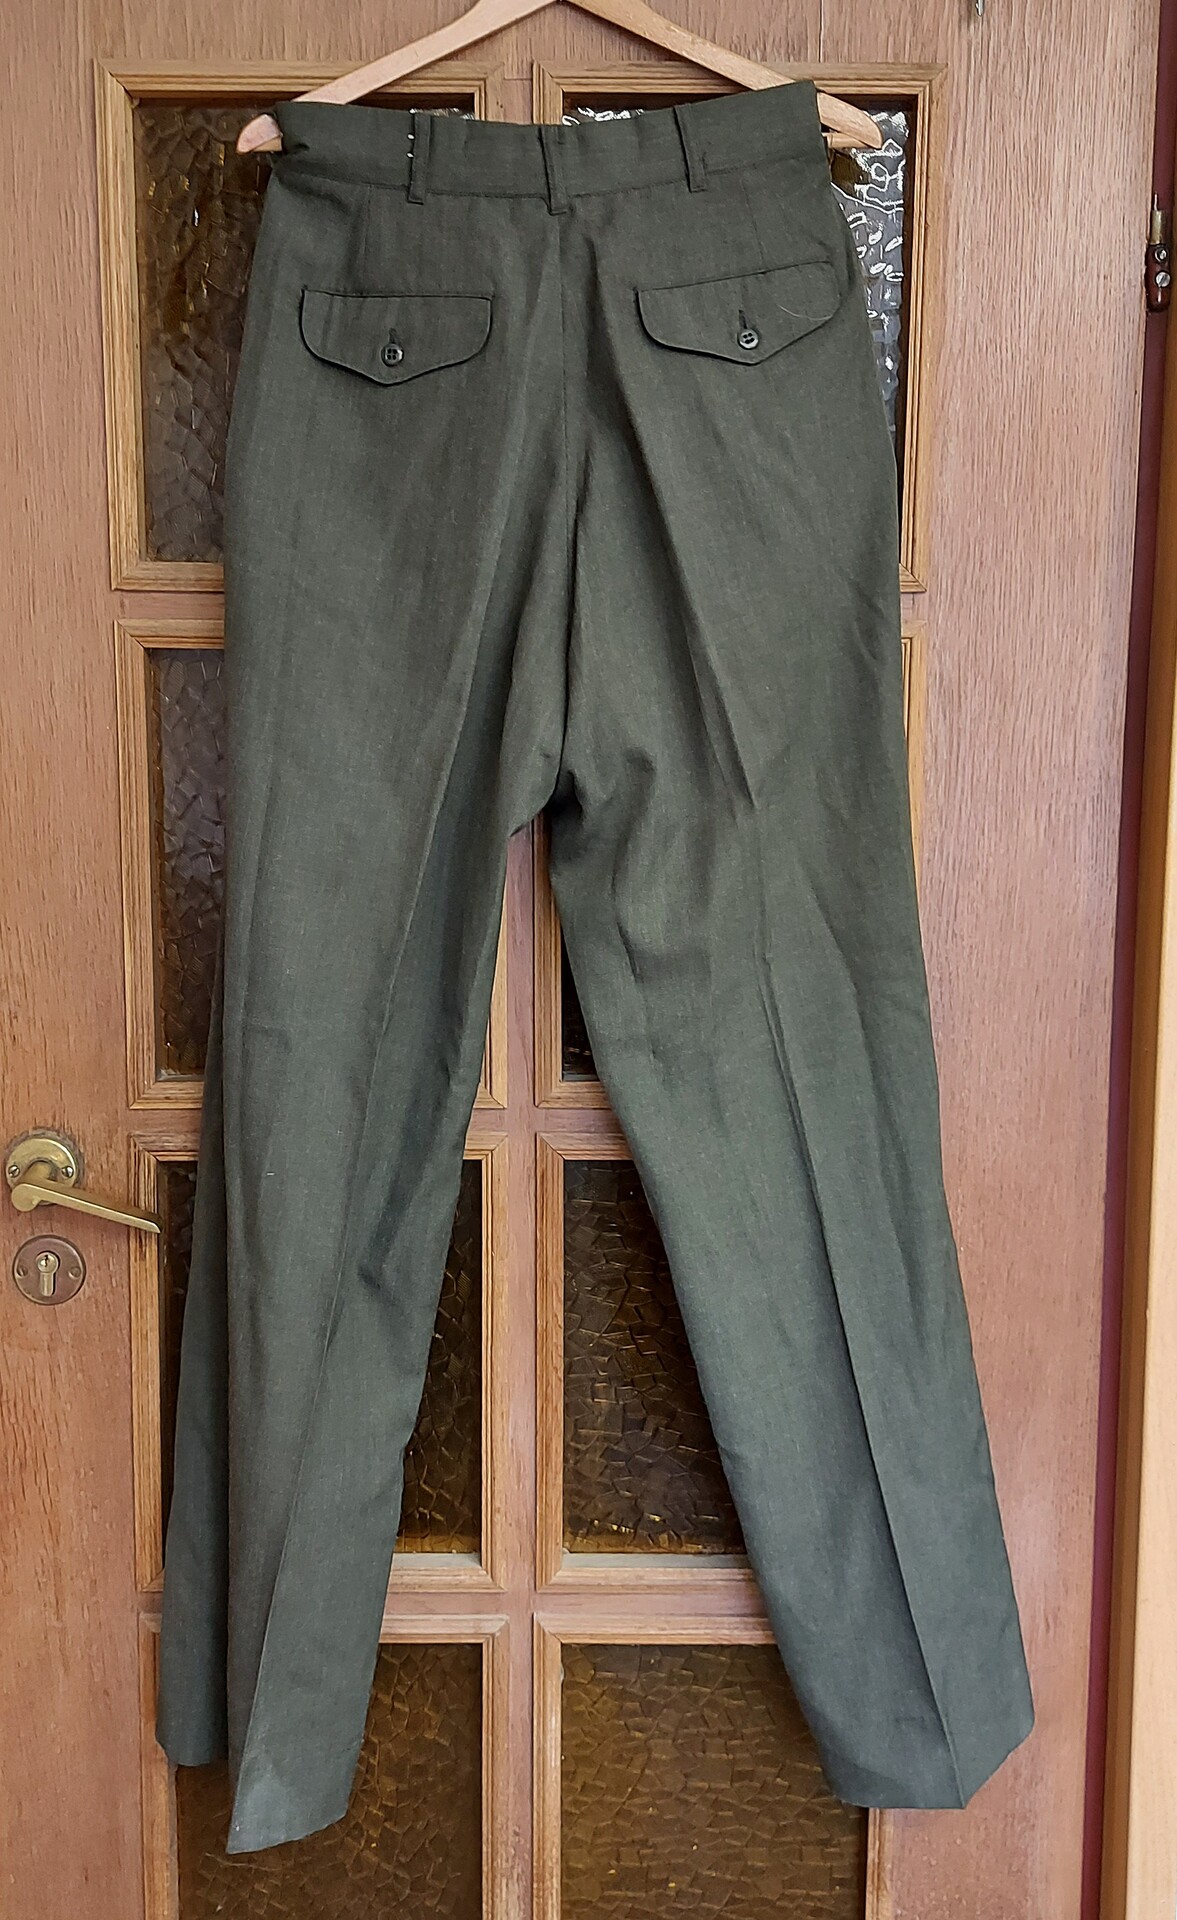 Spodnie Munduru wyjsciowego USMC - Zielone - 33S